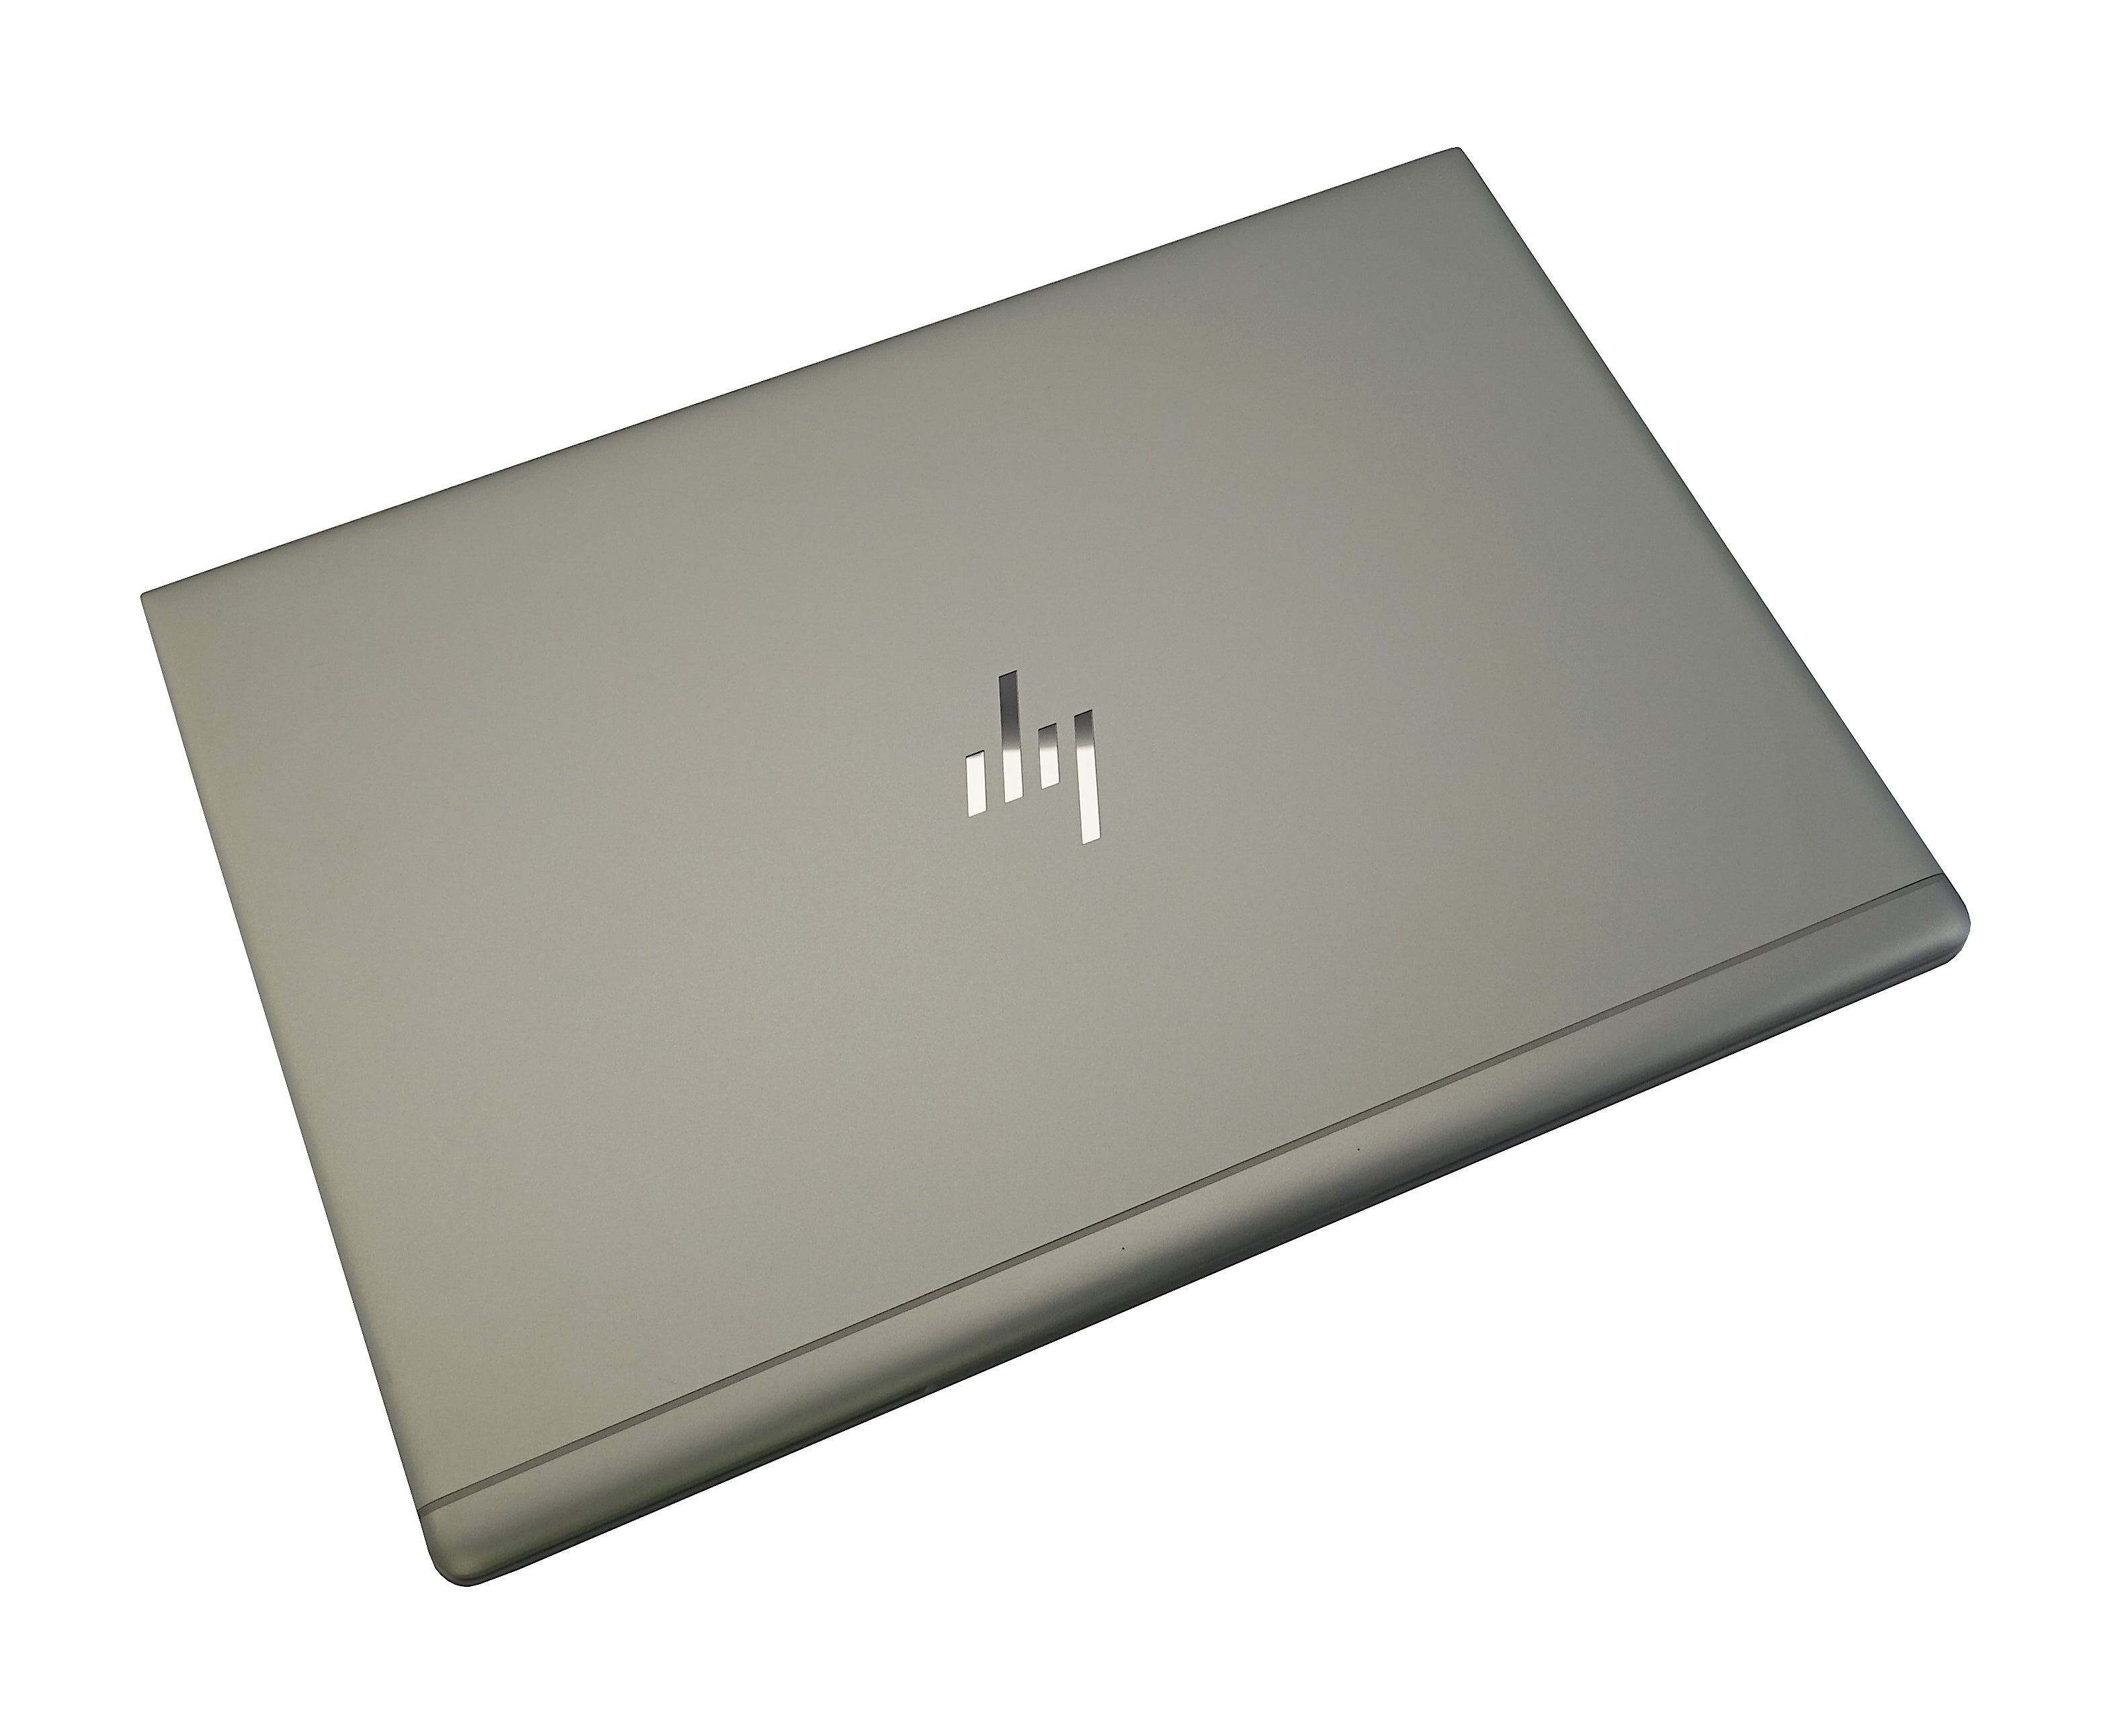 HP EliteBook 840 G6 Laptop, 14" Core i5 8th Gen, 16GB RAM, 256GB SSD